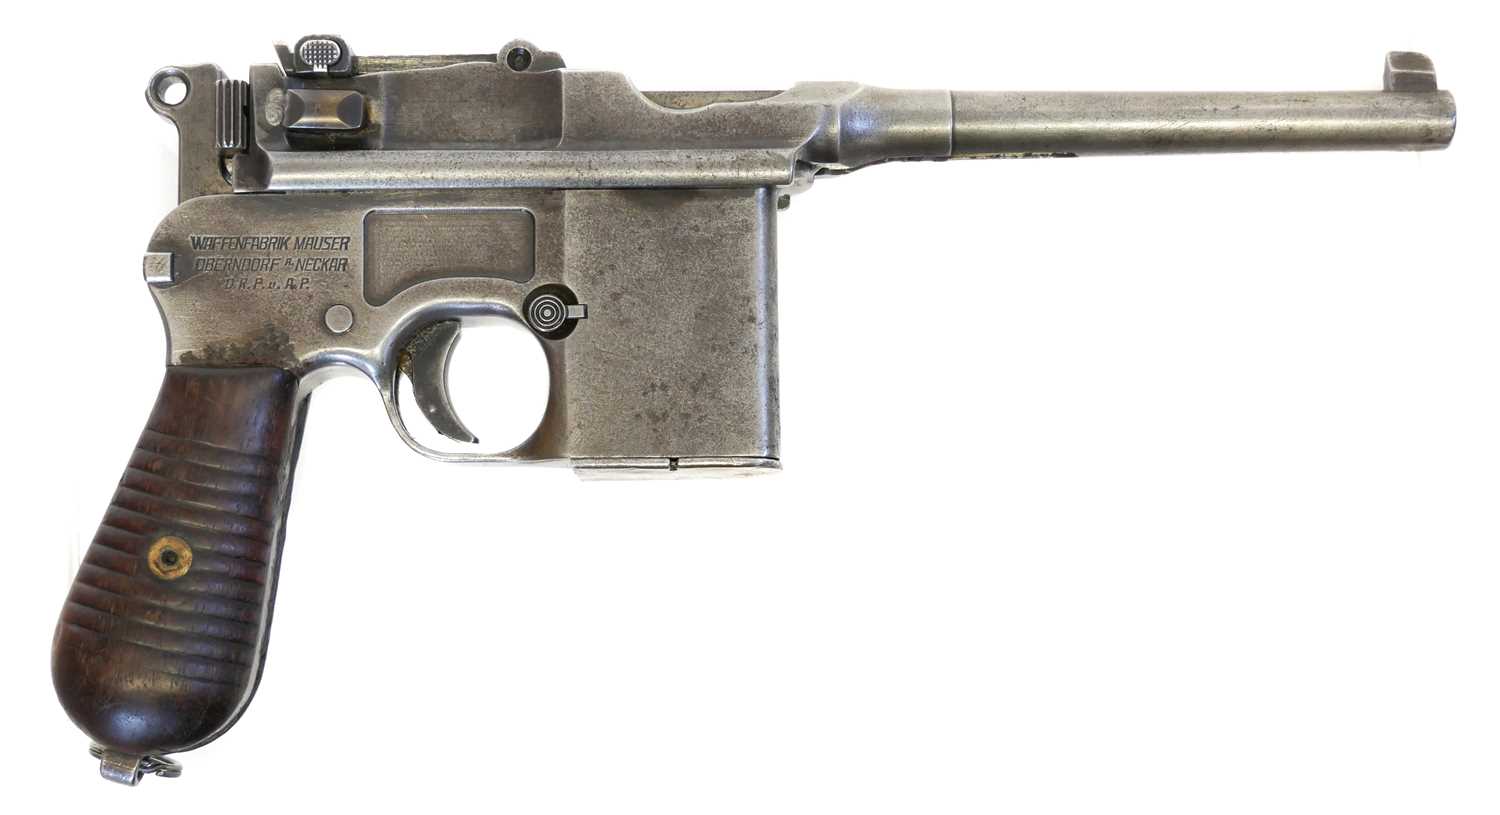 Lot Deactivated German Mauser 7.63 Schnellfeuer 'Broom handle' machine pistol